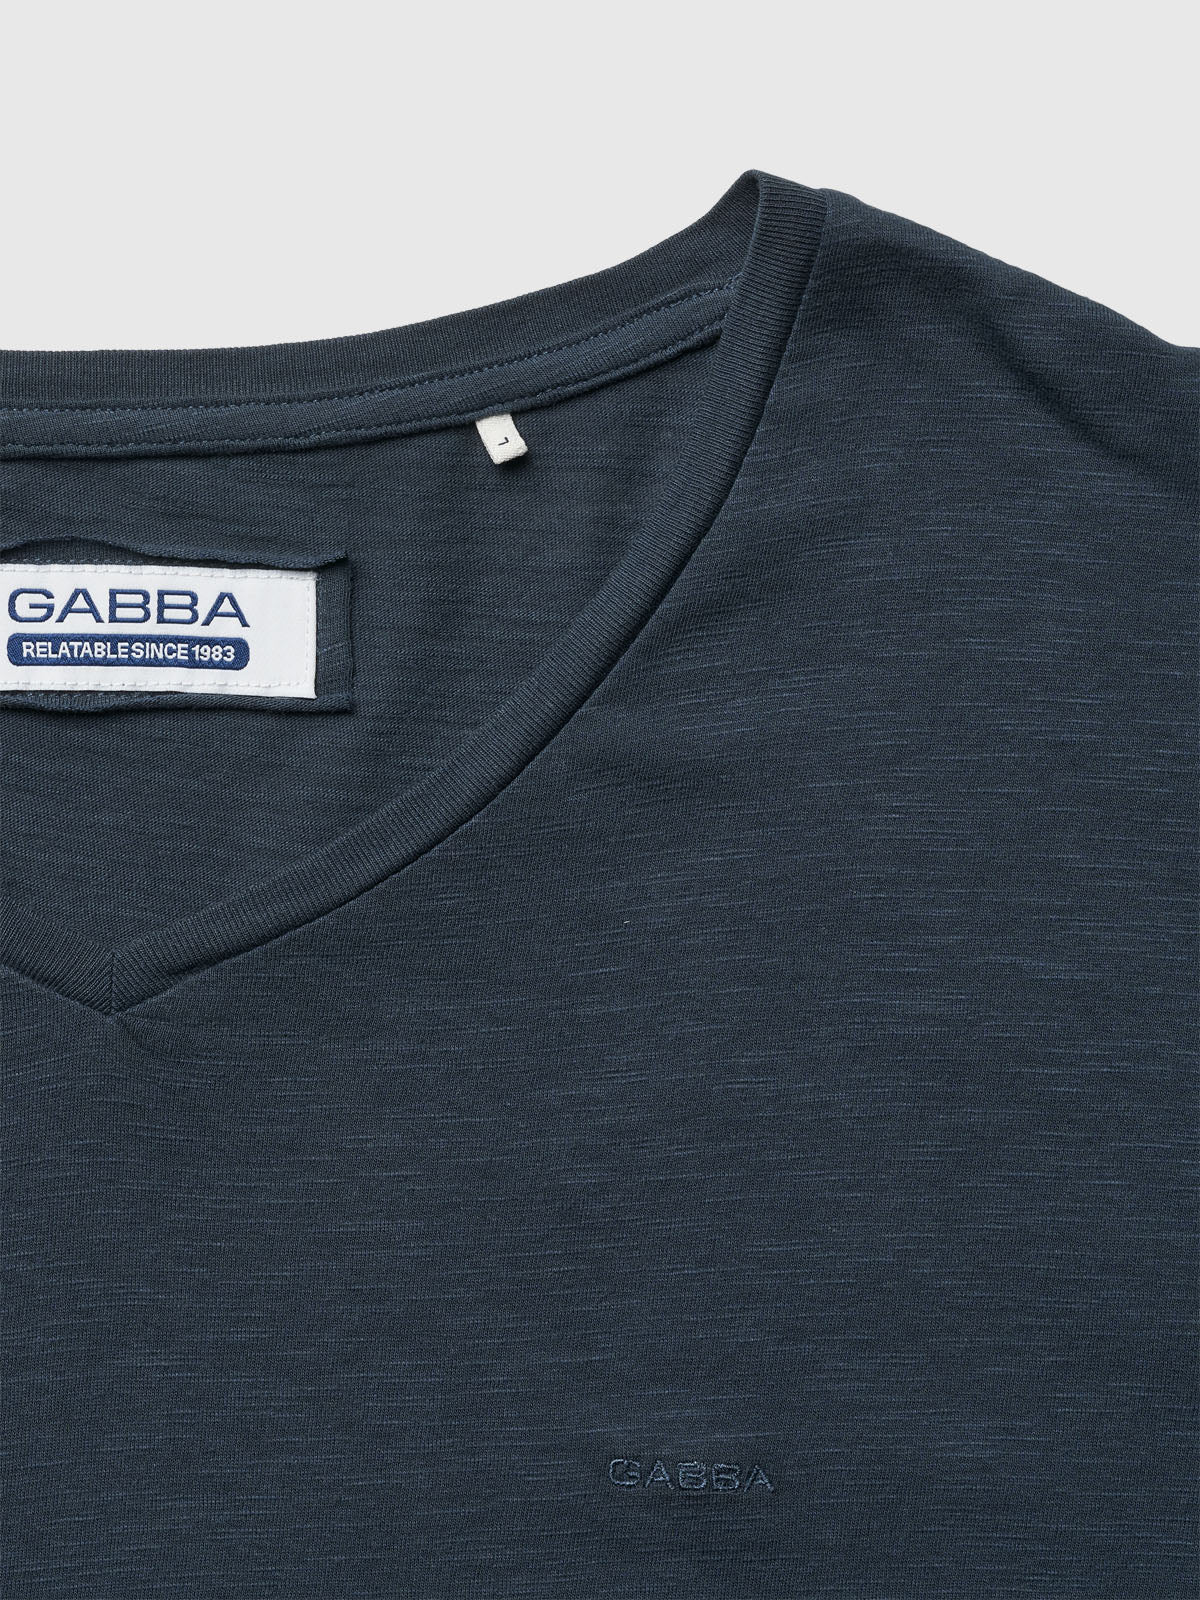 Friend V logo t-shirt navy blazer - Gabba